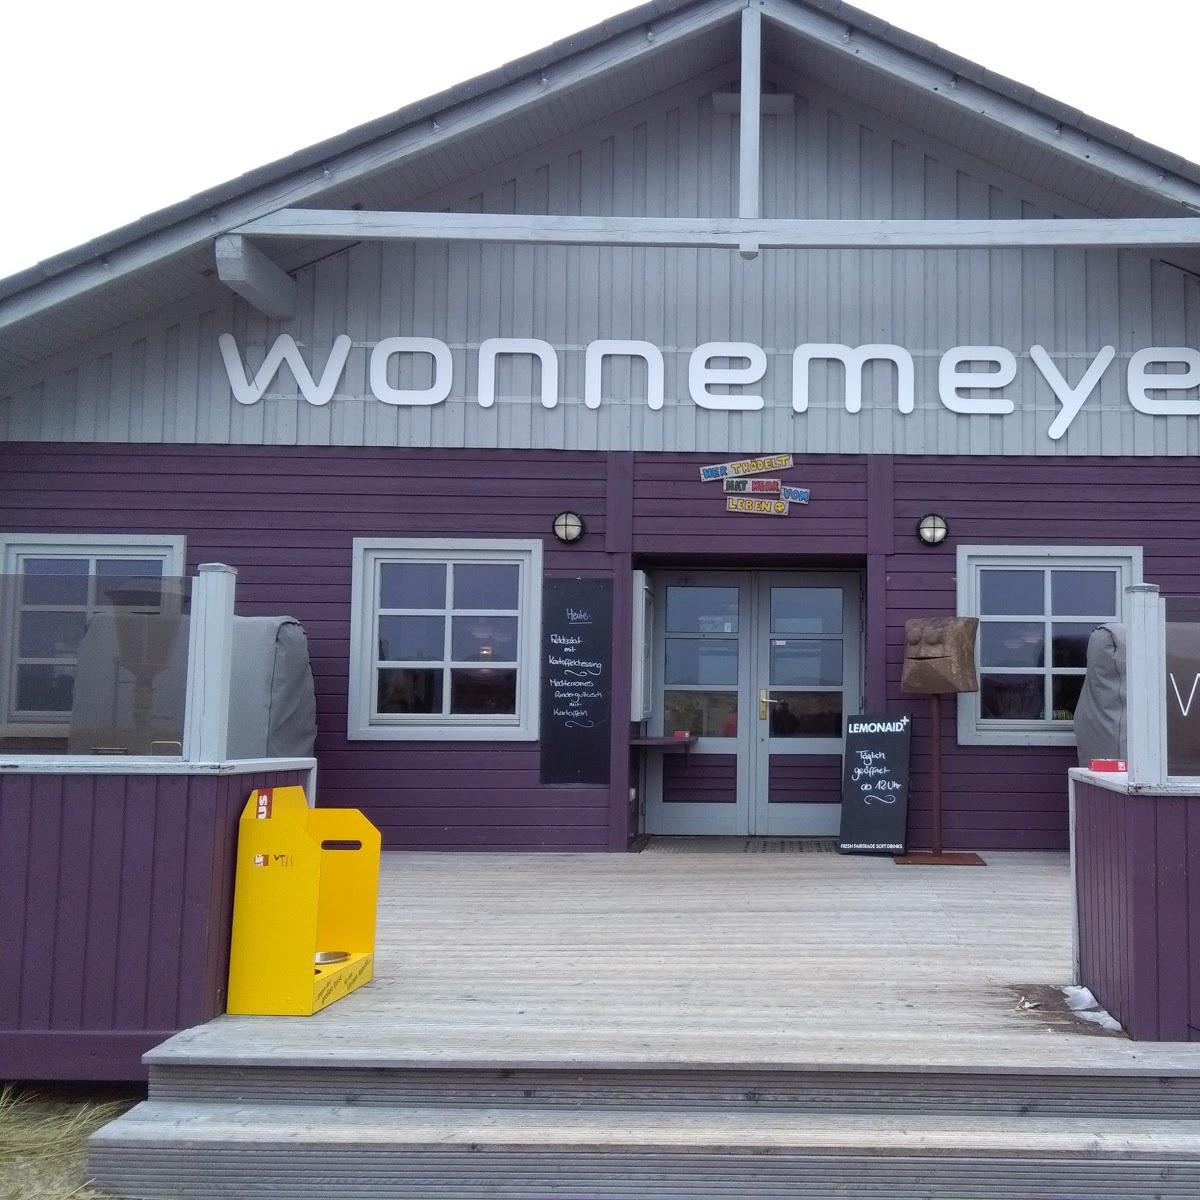 Restaurant "Wonnemeyer Weststrandhalle" in List